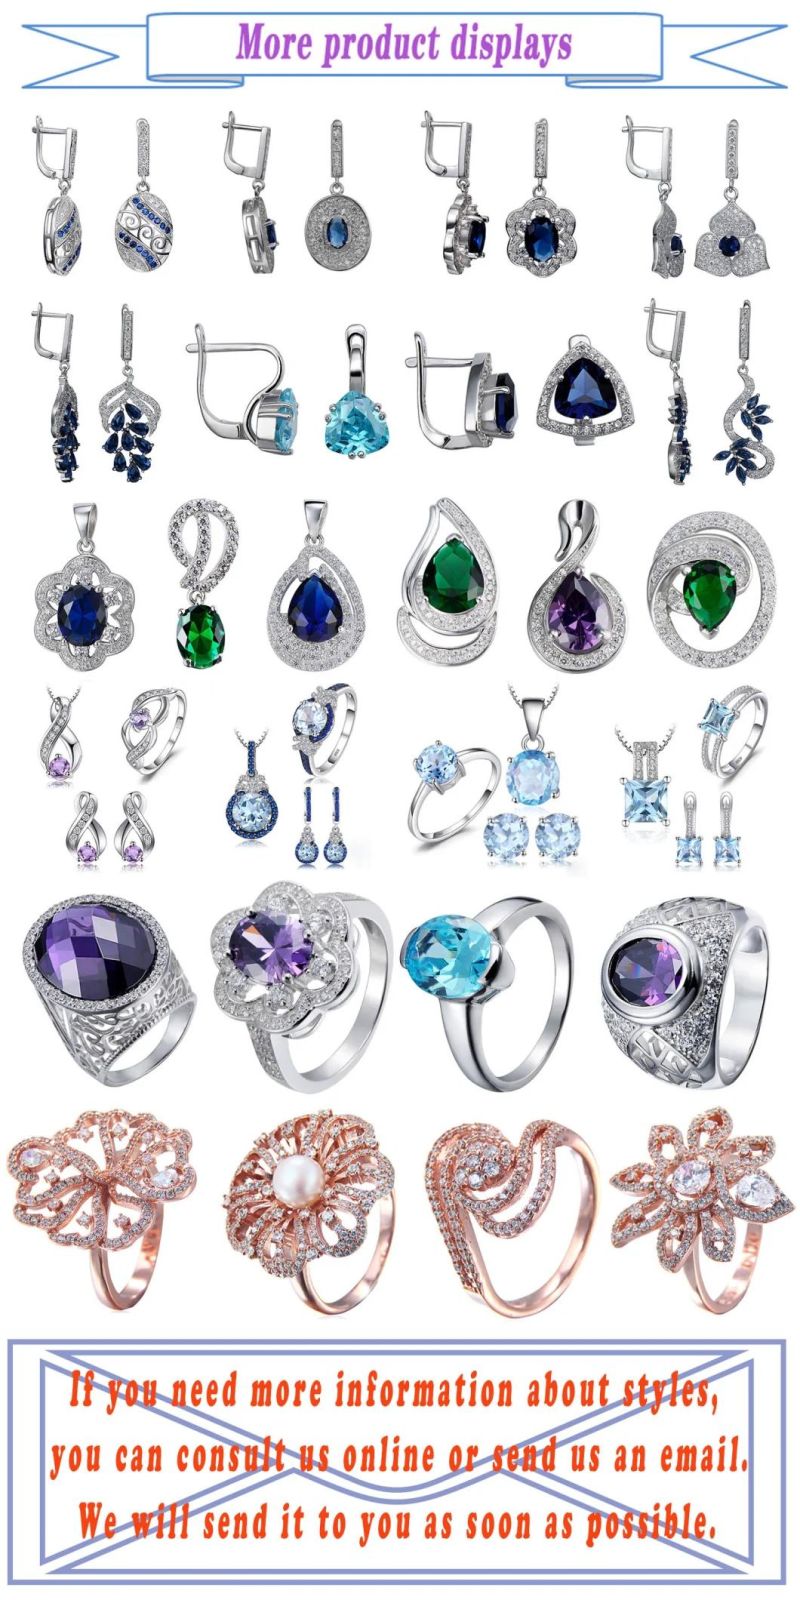 925 Sterling Silver Leaf Earrings Created Alexandrite Sapphire Earrings Purple Cubic Zirconia Earrings Jewelry